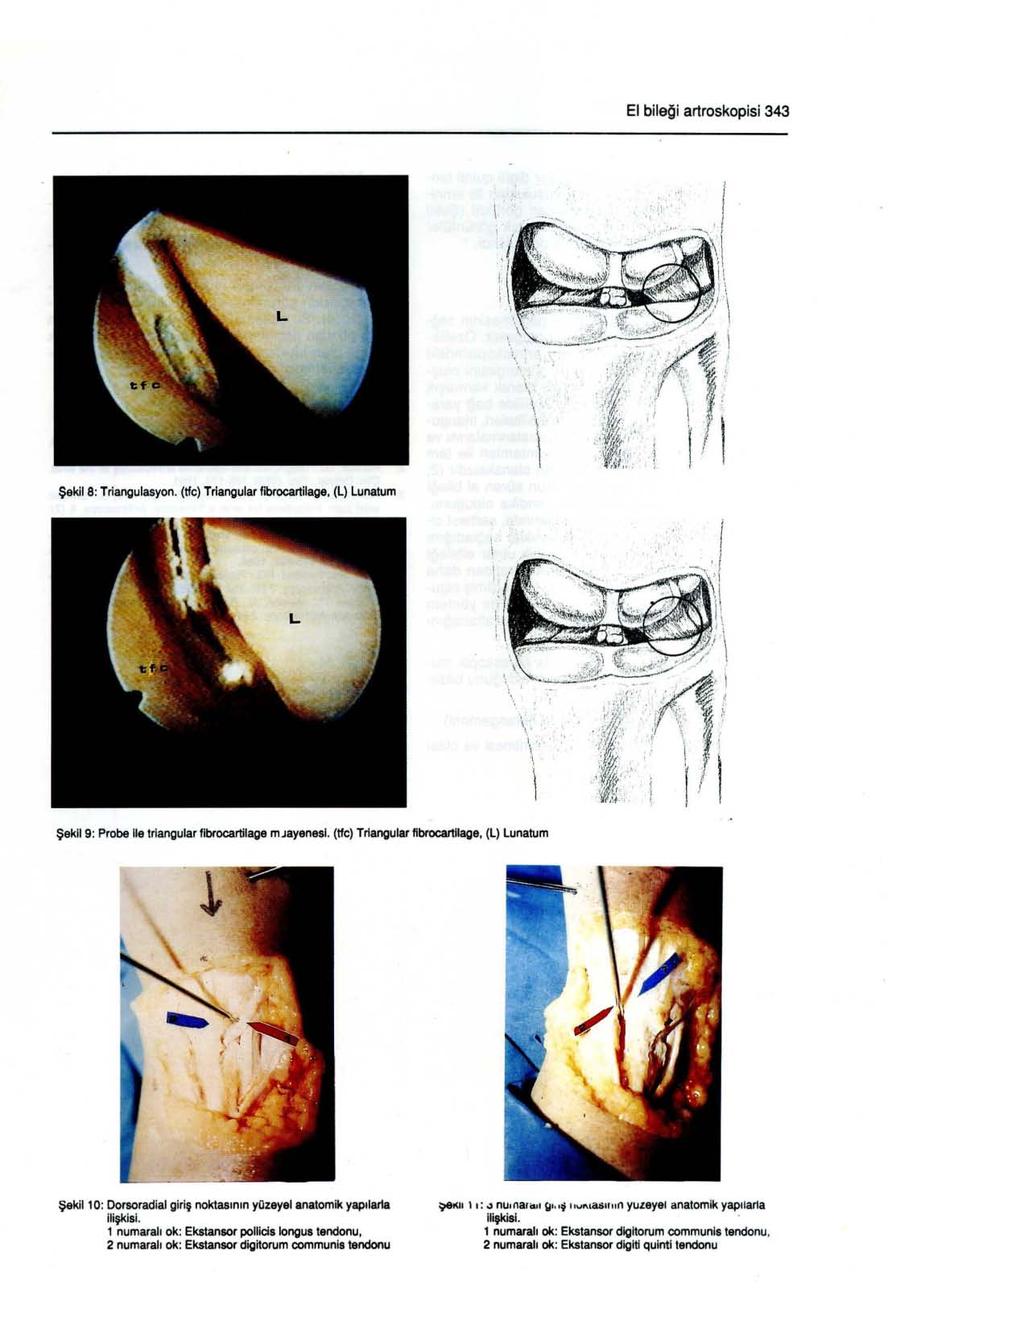 EI bileği artroskopisi 343 : " Şekil 8: Triaooulasyon. (tfc) Triangular fibrocartilage. (L) Lunatum,.,, ': :,' Şekıl 9: Probe Ile trlangular flbrocartilage mjayenesl. (tfc) Trlangular flbrocartllage.